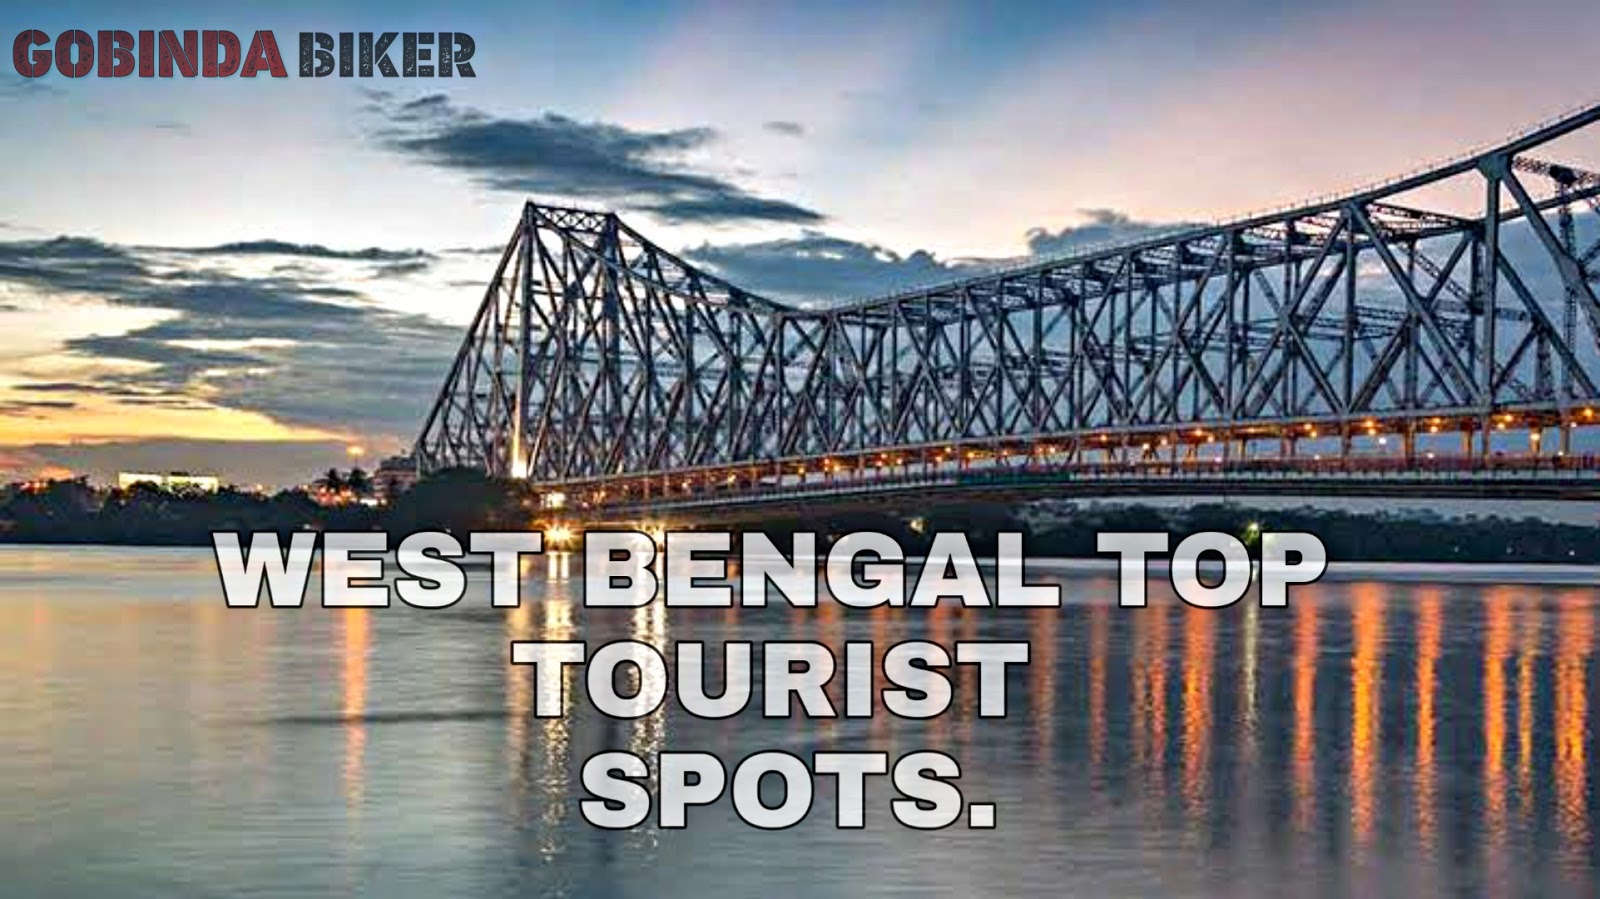 nearest tourist spot from west bengal